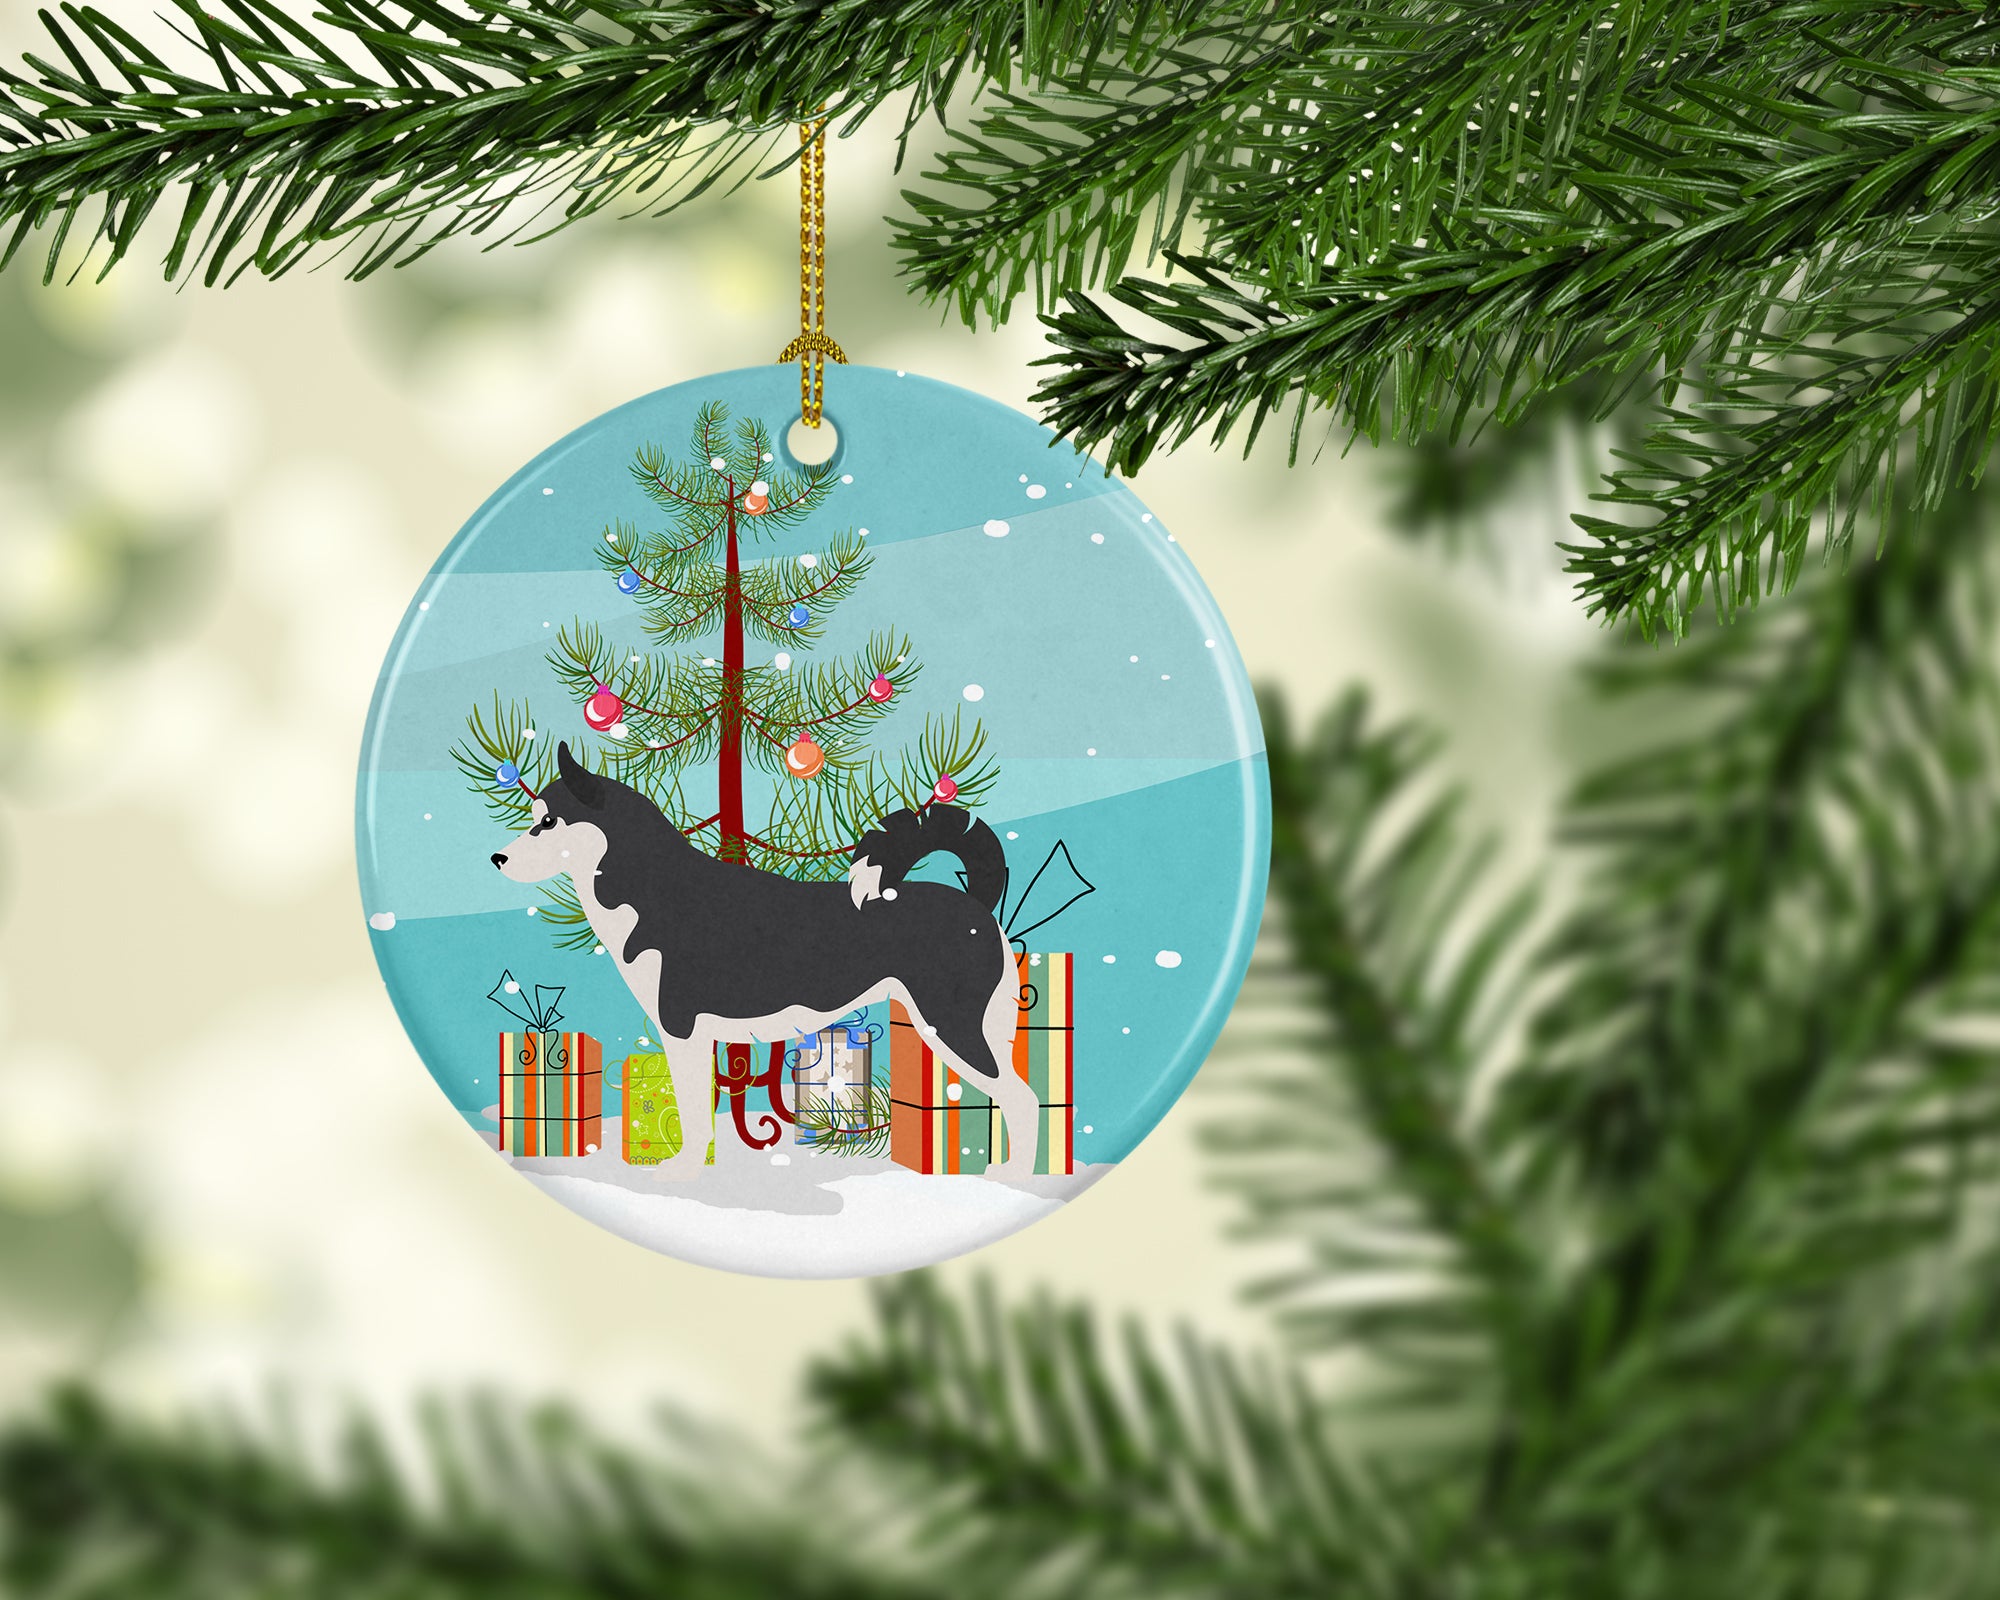 Siberian Husky Merry Christmas Tree Ceramic Ornament BB2998CO1 - the-store.com